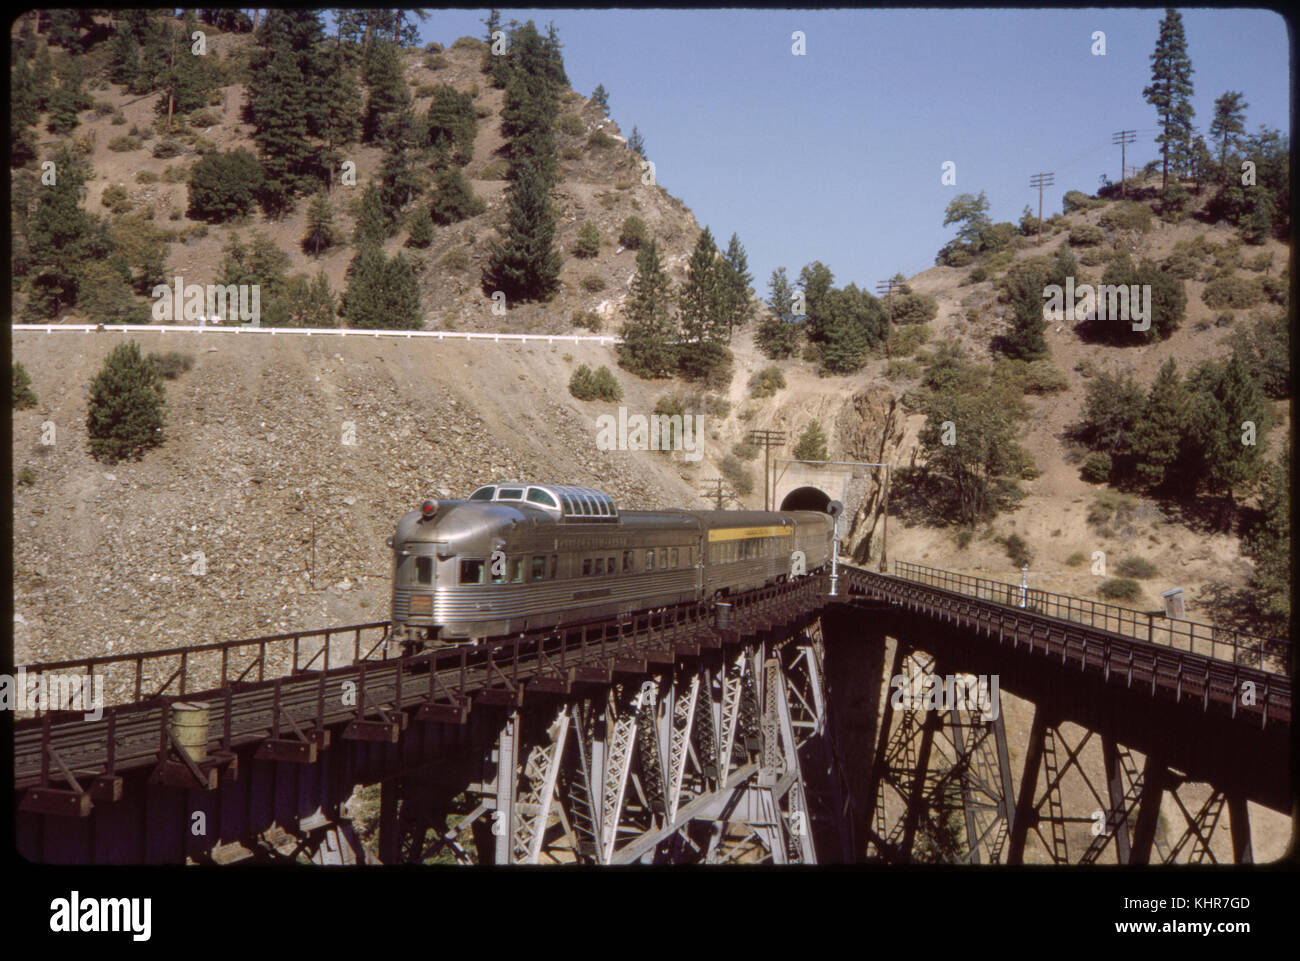 California zephyr train sortant de tunnel sur voie surélevée, California, USA, 1964 Banque D'Images